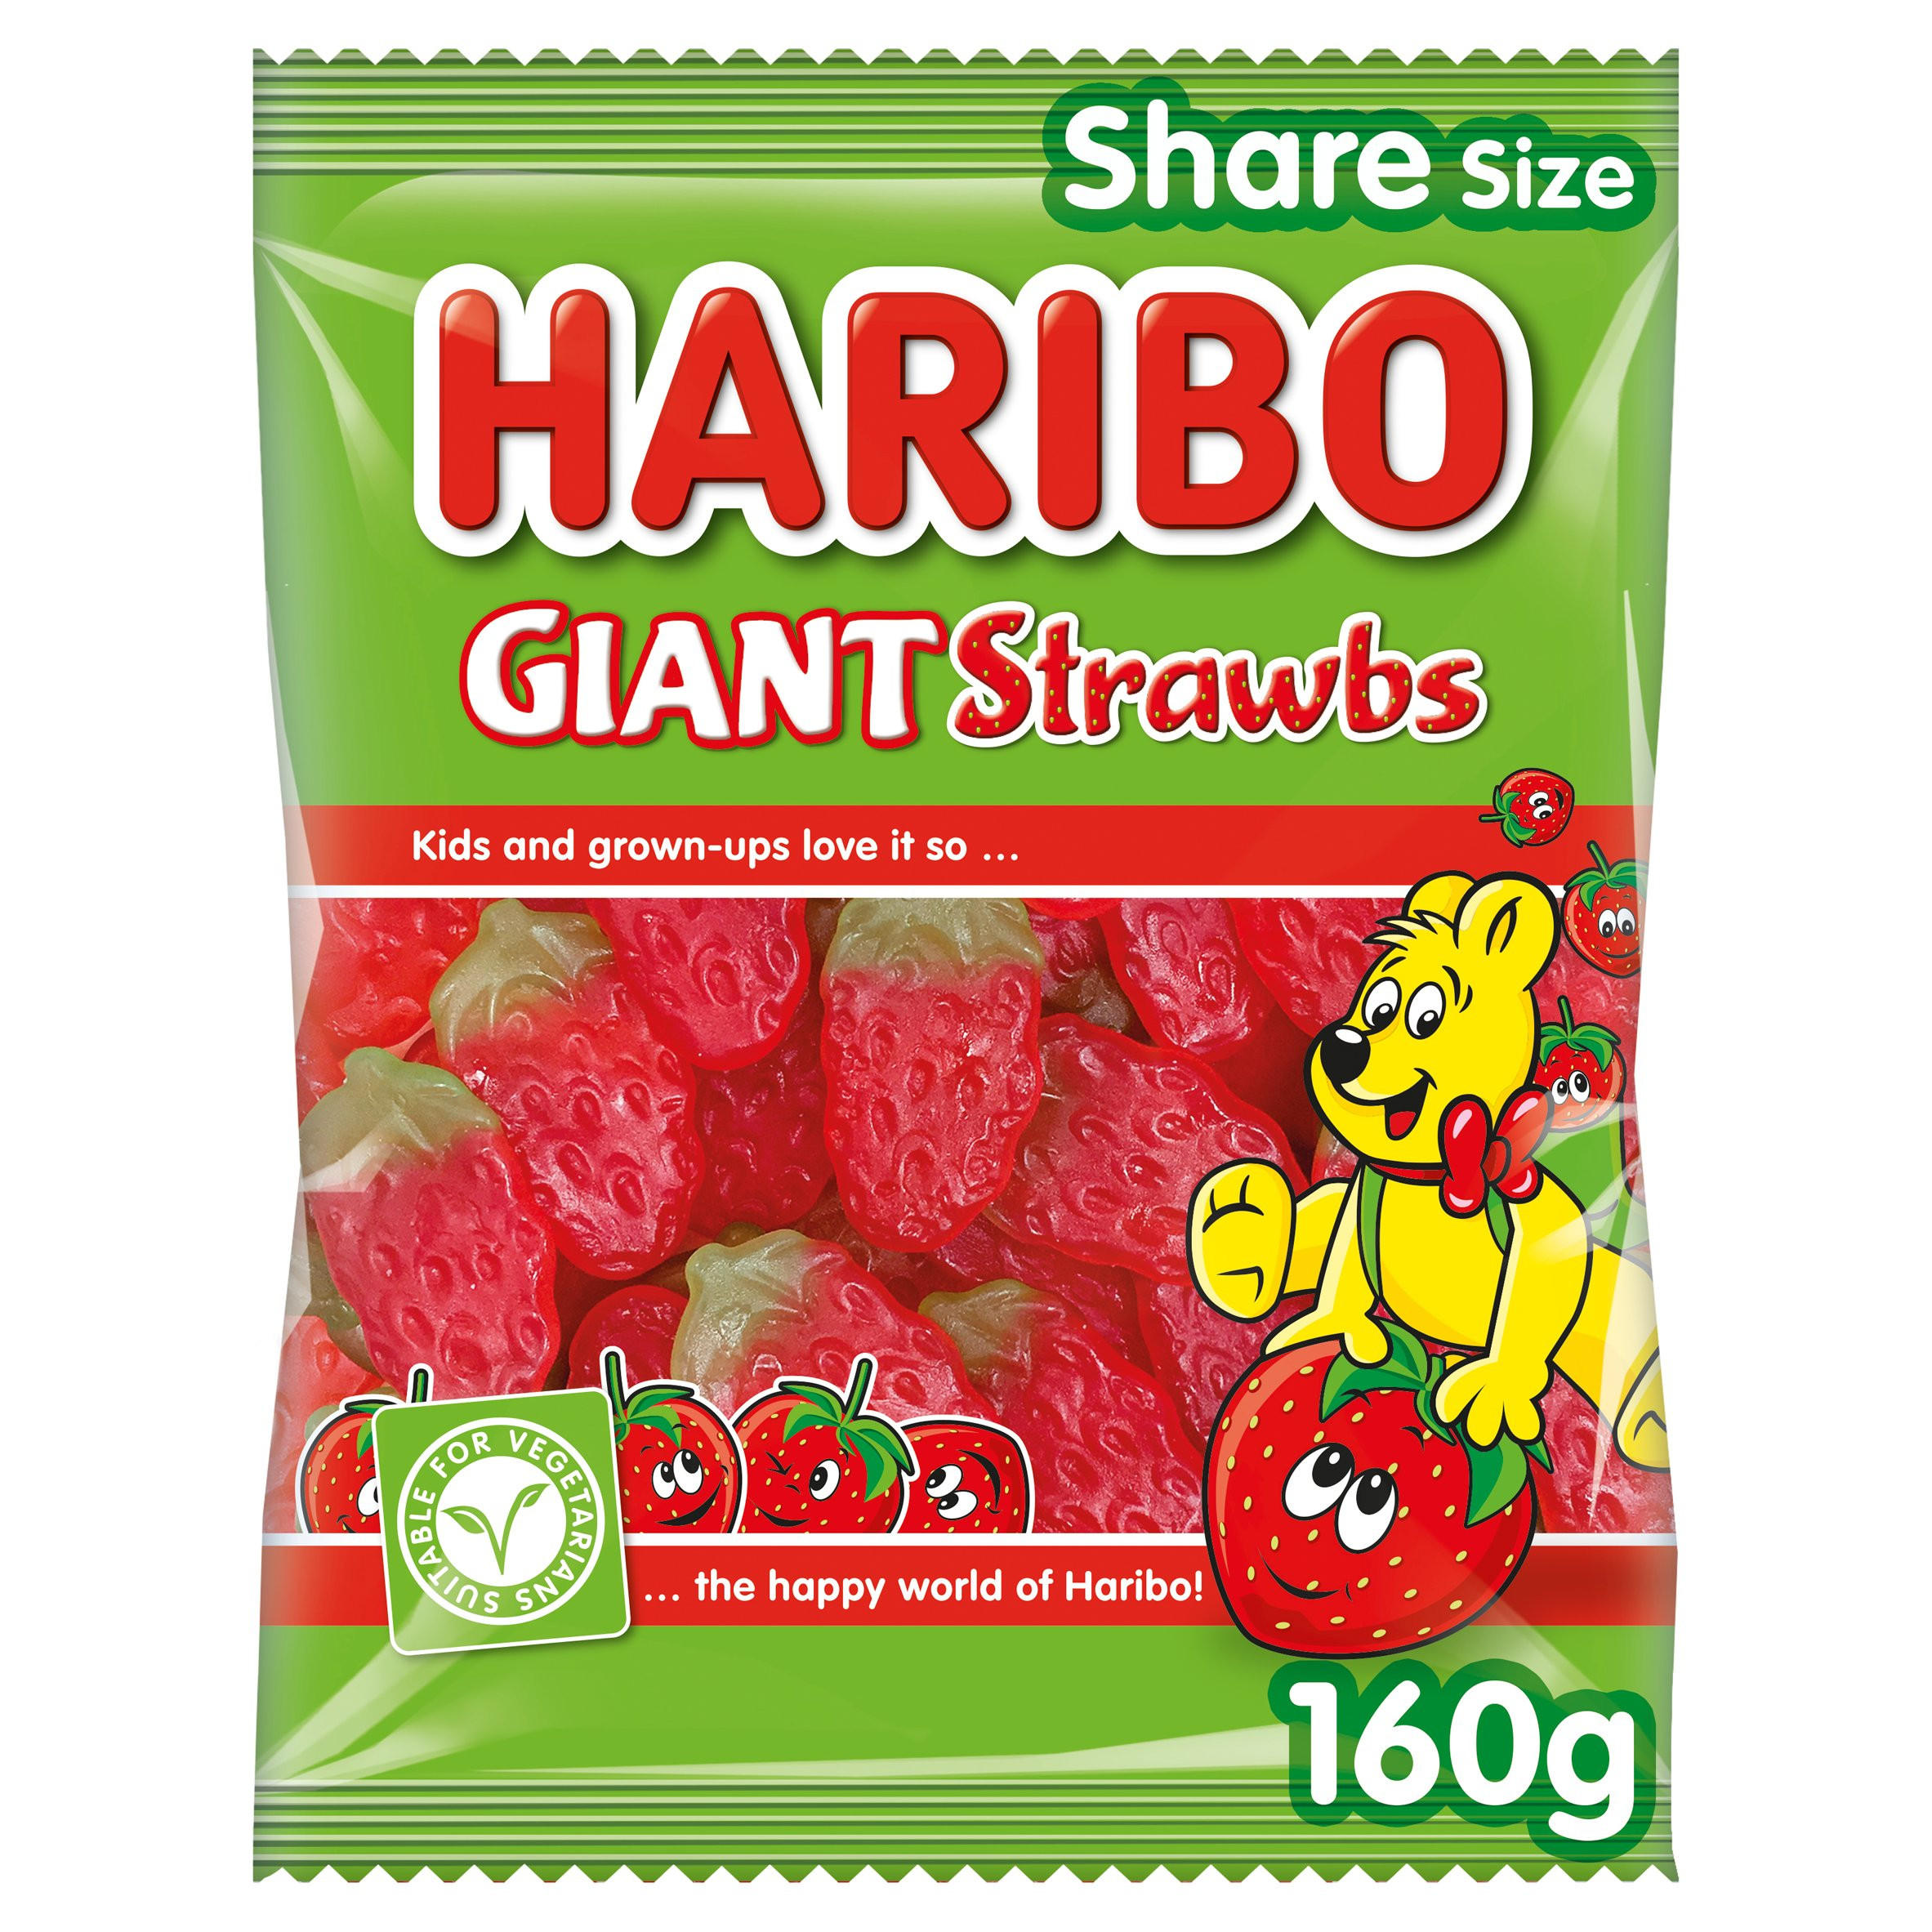 Buy Haribo Strawberry Balla Stixx - 160g Online France